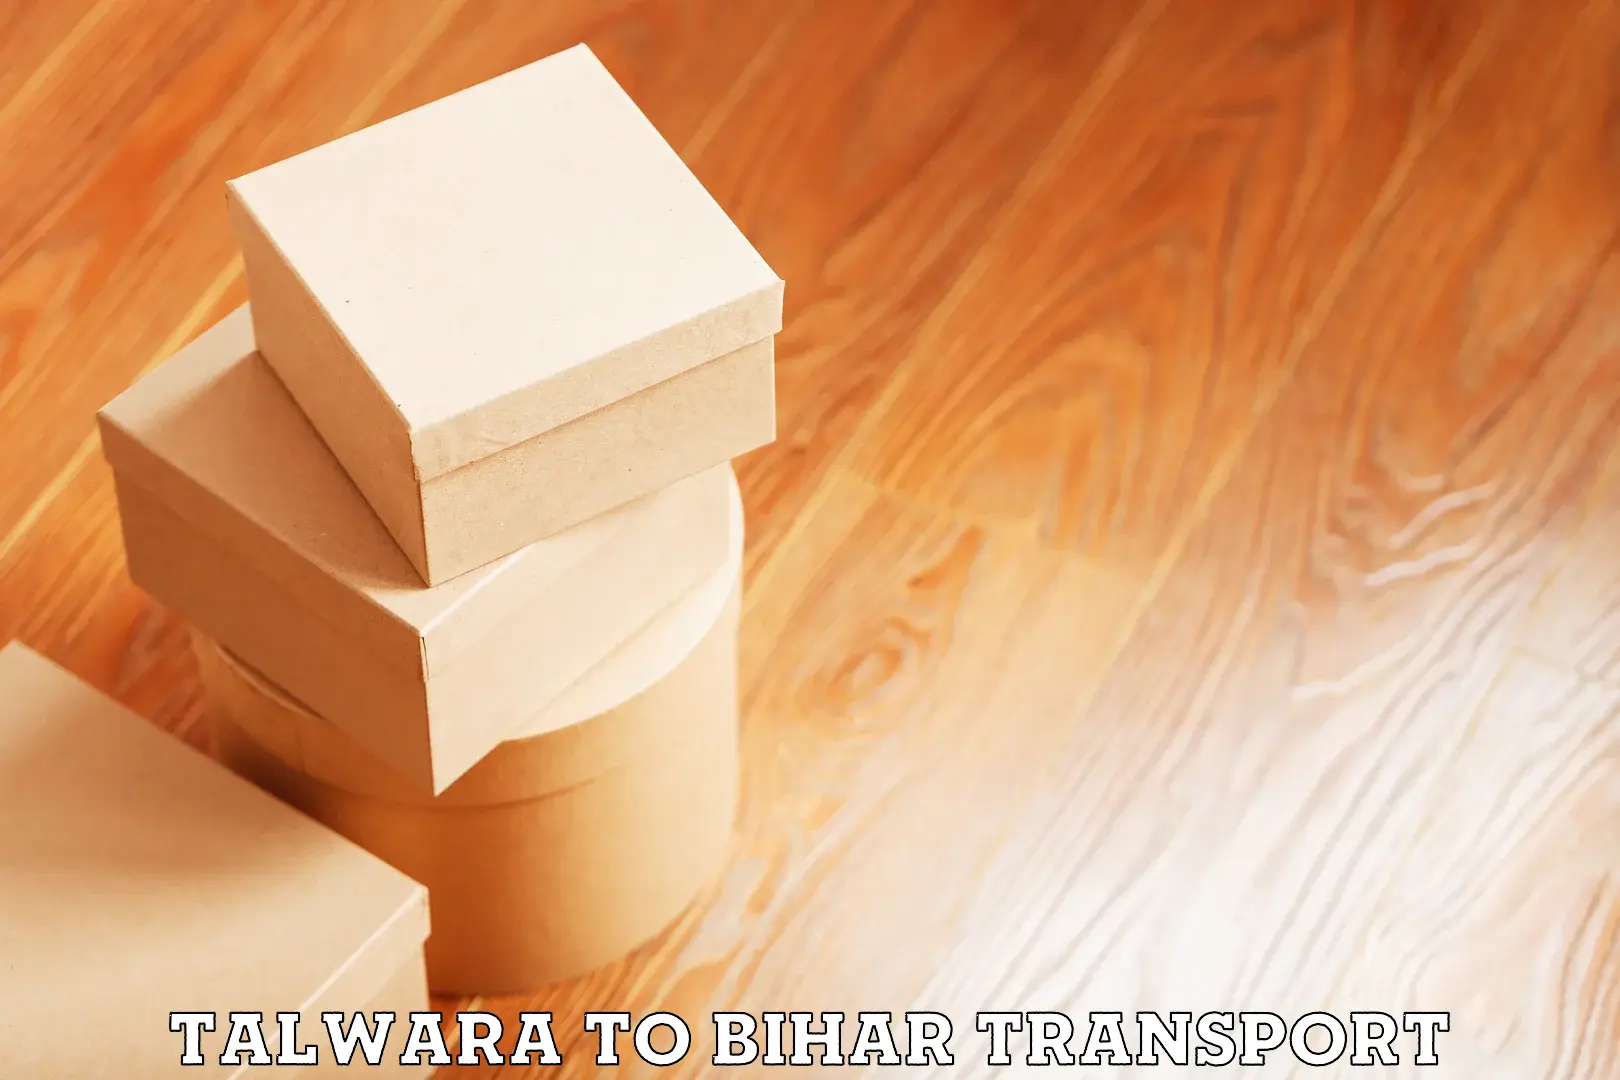 Lorry transport service Talwara to Dighwara